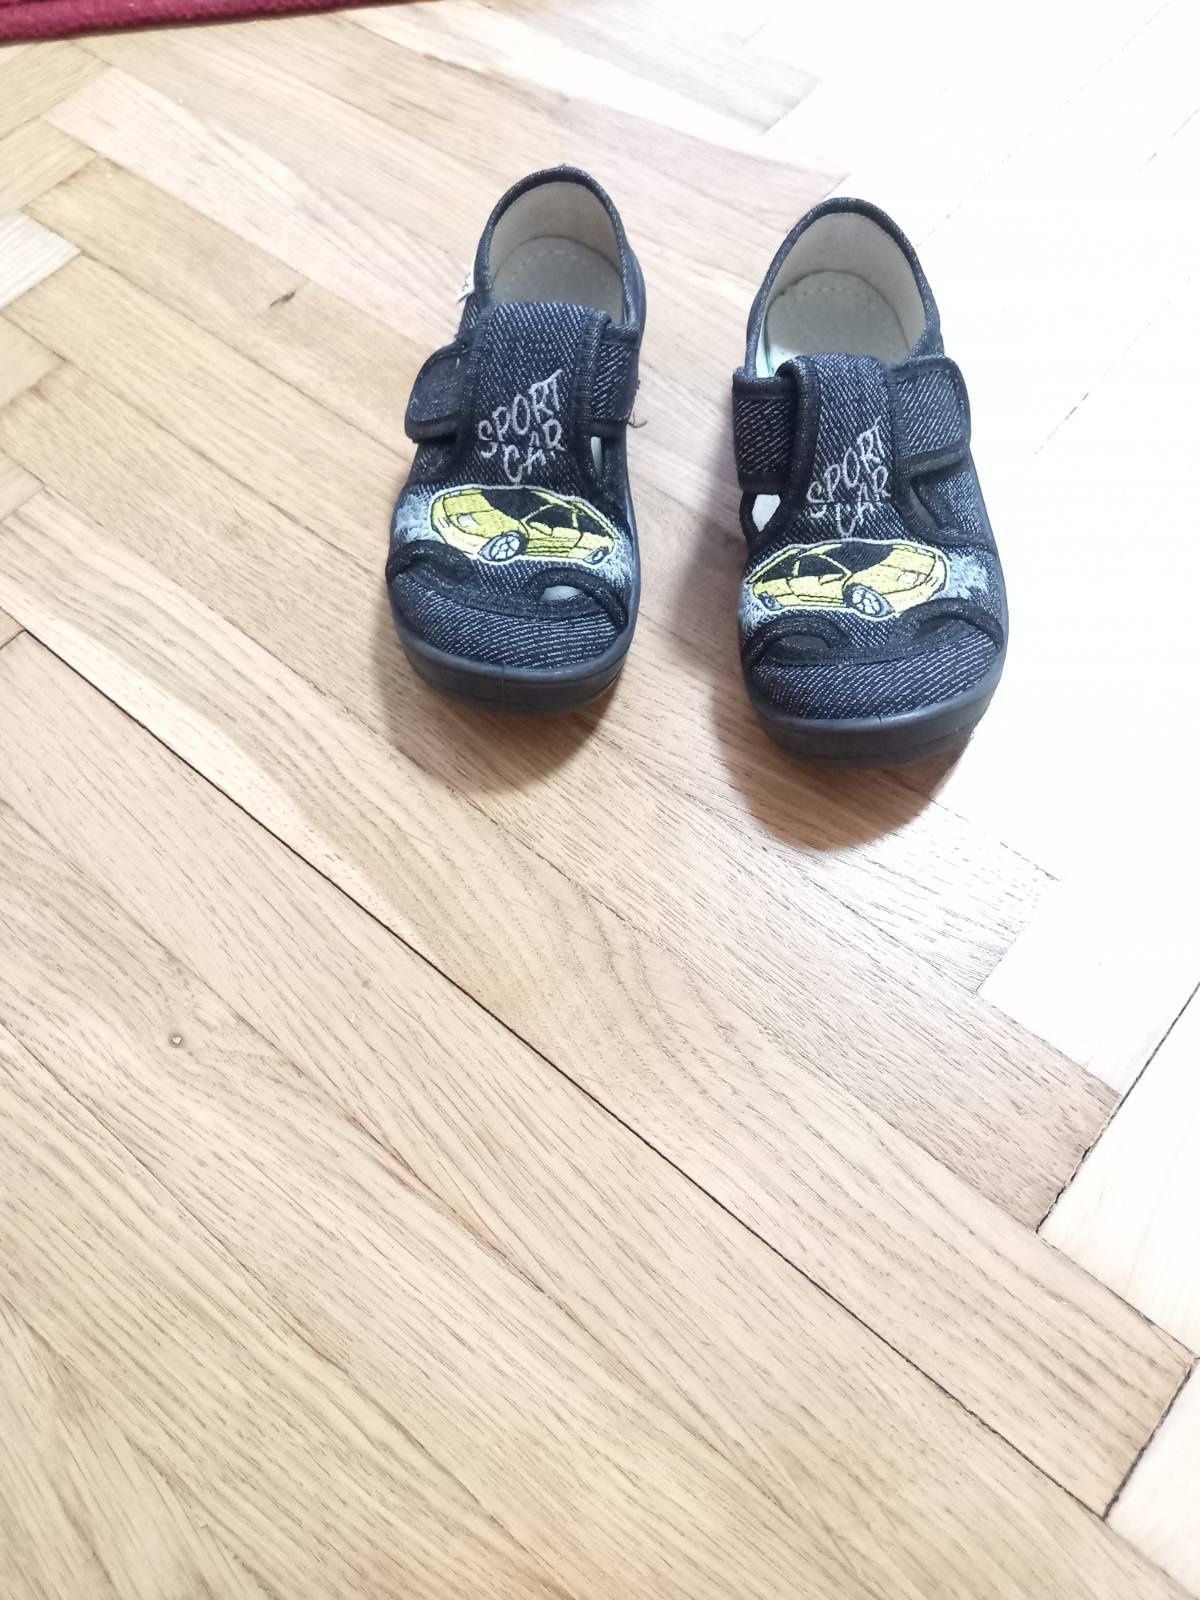 Детская обувь для мальчика раз 27